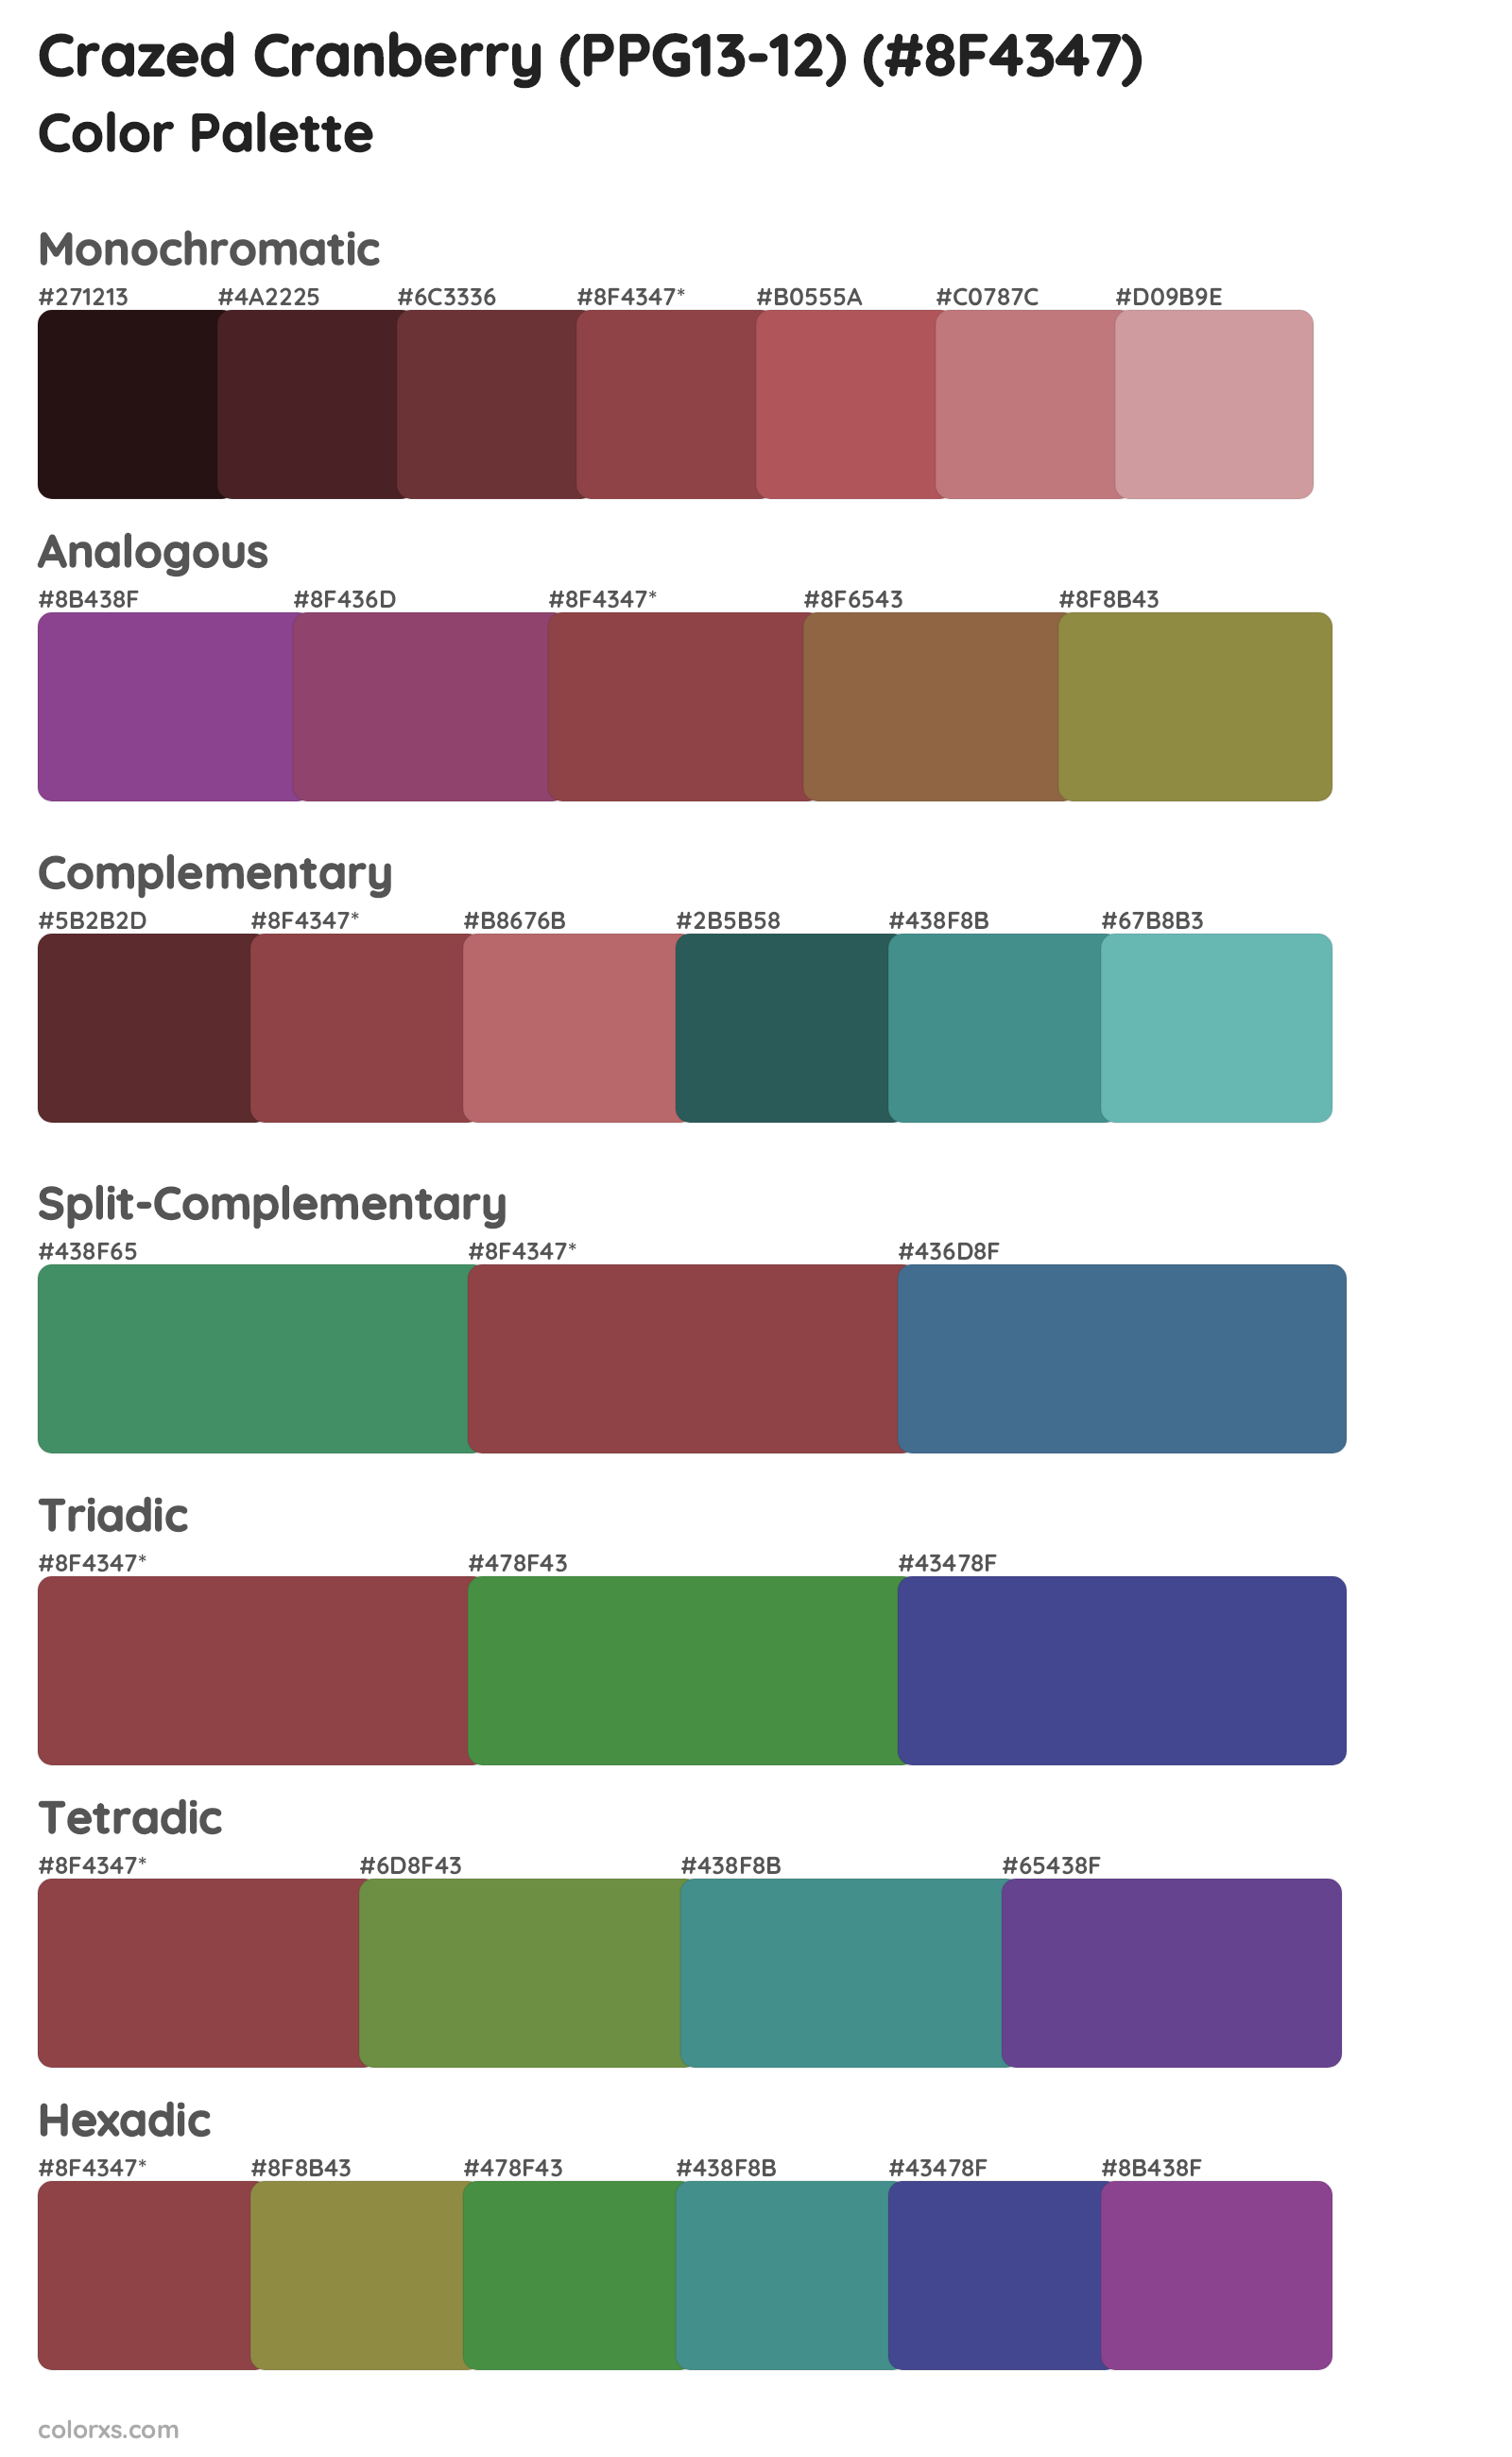 Crazed Cranberry (PPG13-12) Color Scheme Palettes